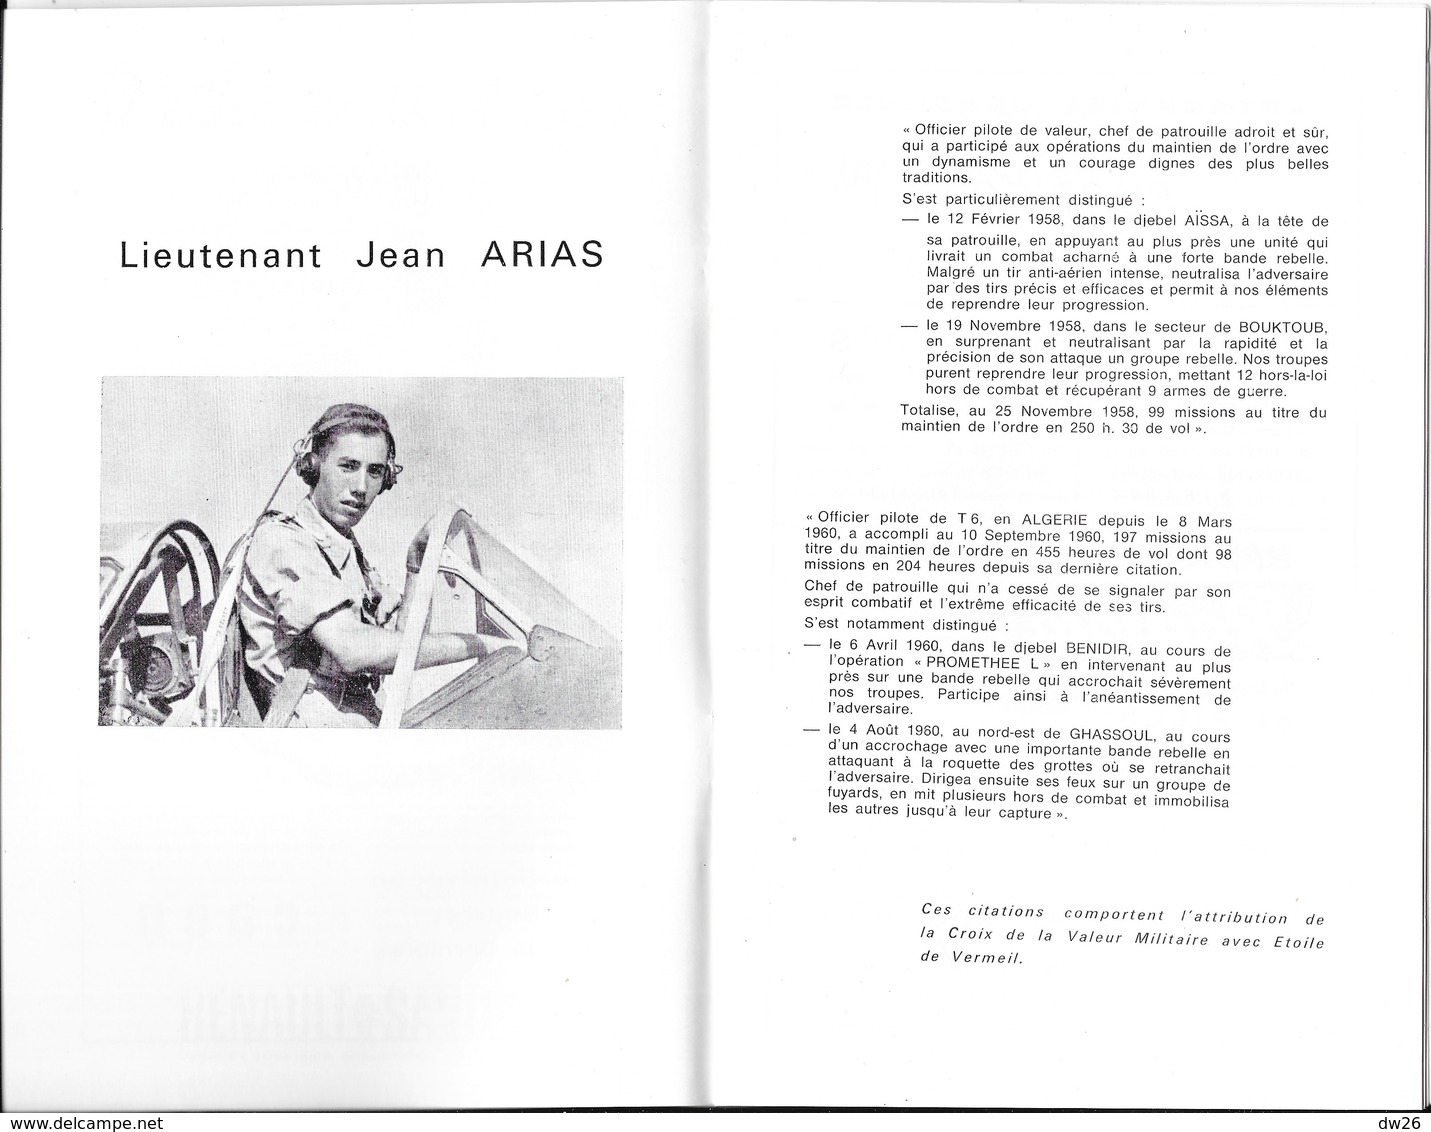 Programme Gala Des Elèves Officiers De Réserve De L'Armée De L'Air - Point Fixe, 14 Janvier 1967 - Programma's